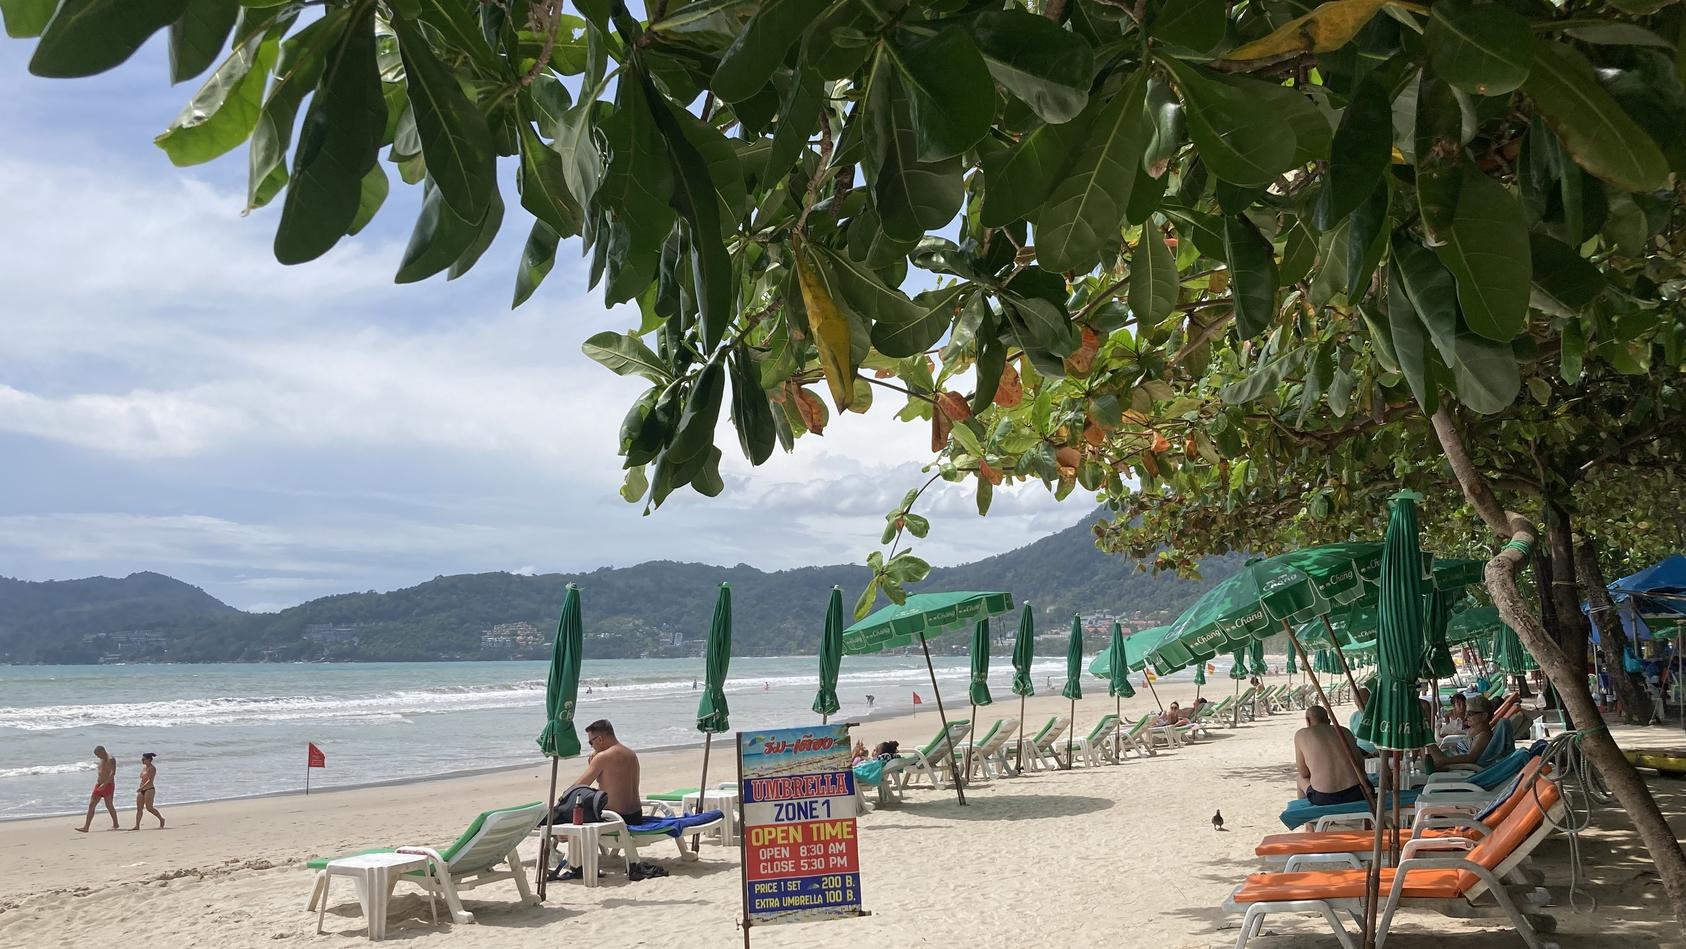 06.08.2021, Thailand, Phuket: Touristen halten sich im Rahmen des Modellprojekts "Sandbox" am Patong Beach auf. Phuket lässt seit 1. Juli vollständig geimpfte Urlauber quarantänefrei auf die Insel. So auch eine 57-jährige Schweizerin, die tot aufgefu